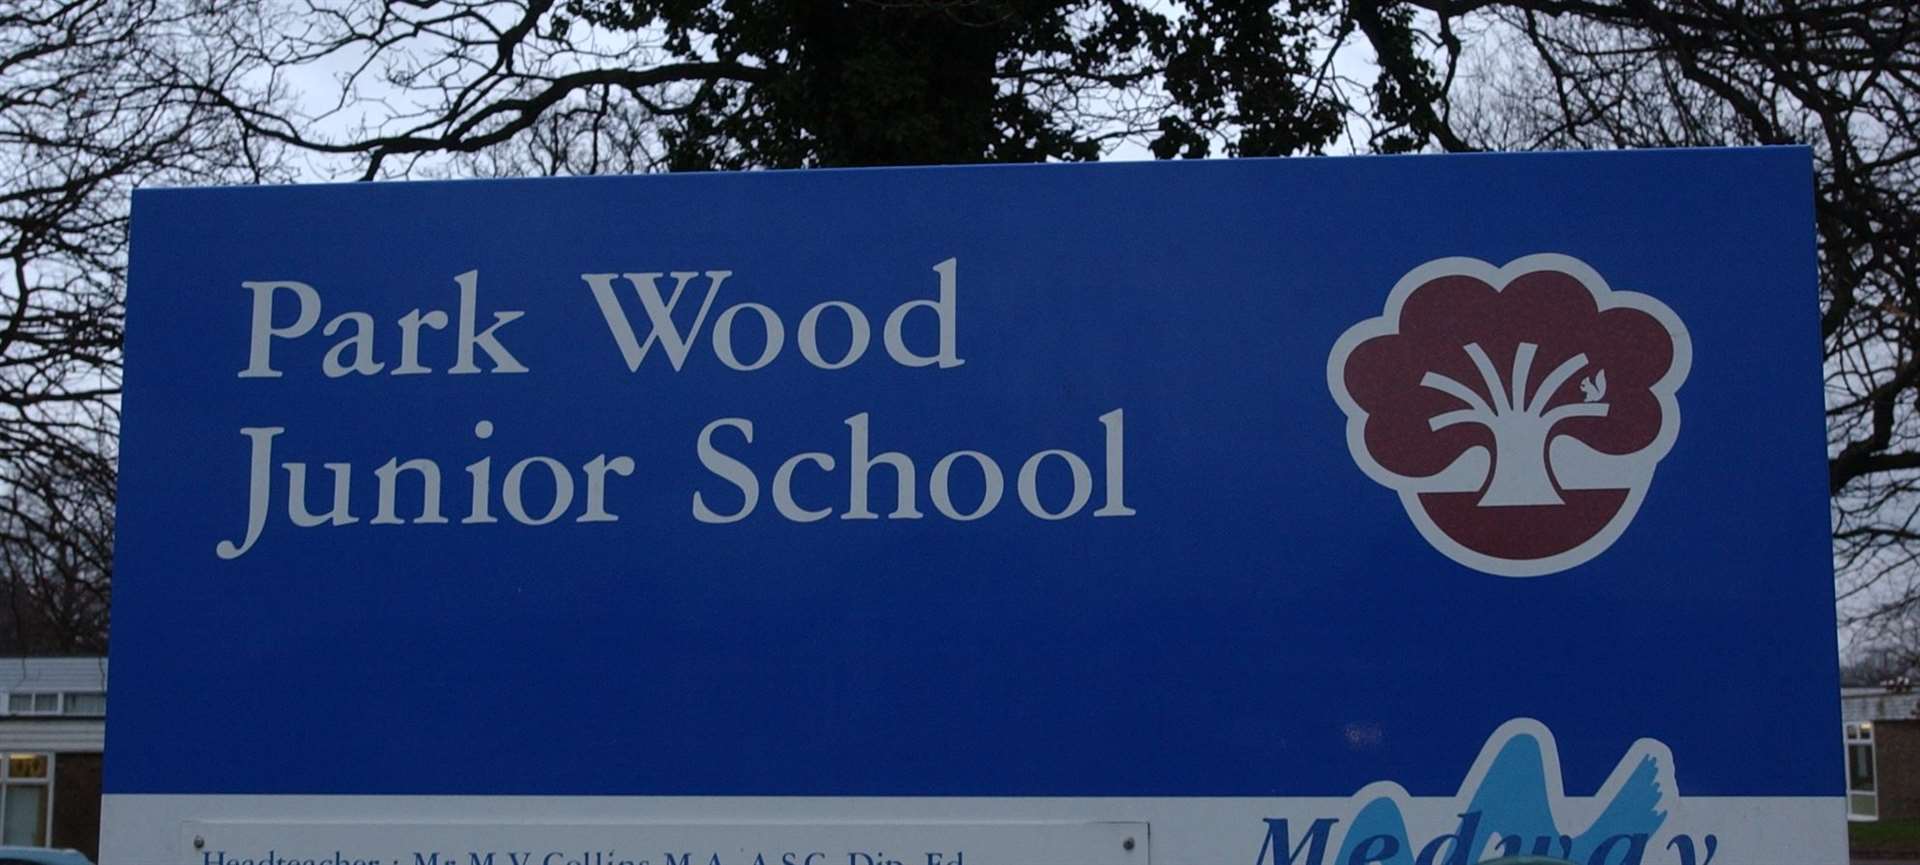 Park Wood School in Deanwood Drive Rainham, was targeted last month